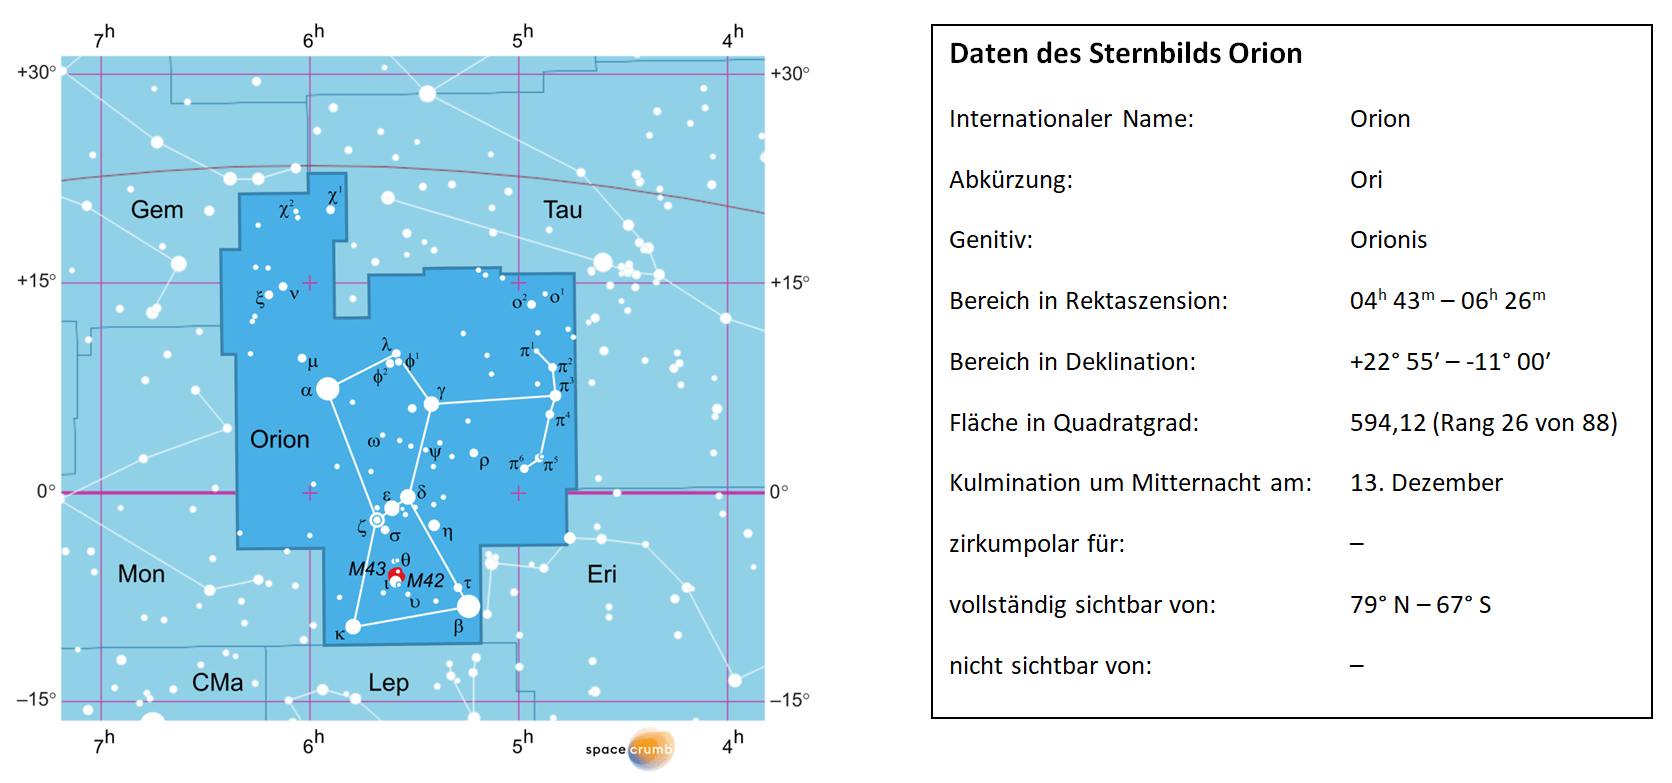 Links zeigt eine mit Koordinaten versehene  Karte eines Himmelsausschnitts weiße Sterne auf hellblauem Hintergrund. Die Fläche, die das Sternbild Orion einnimmt, ist dunkelblau hervorgehoben. Eine Tabelle rechts gibt wichtige Daten des Sternbilds Orion an.